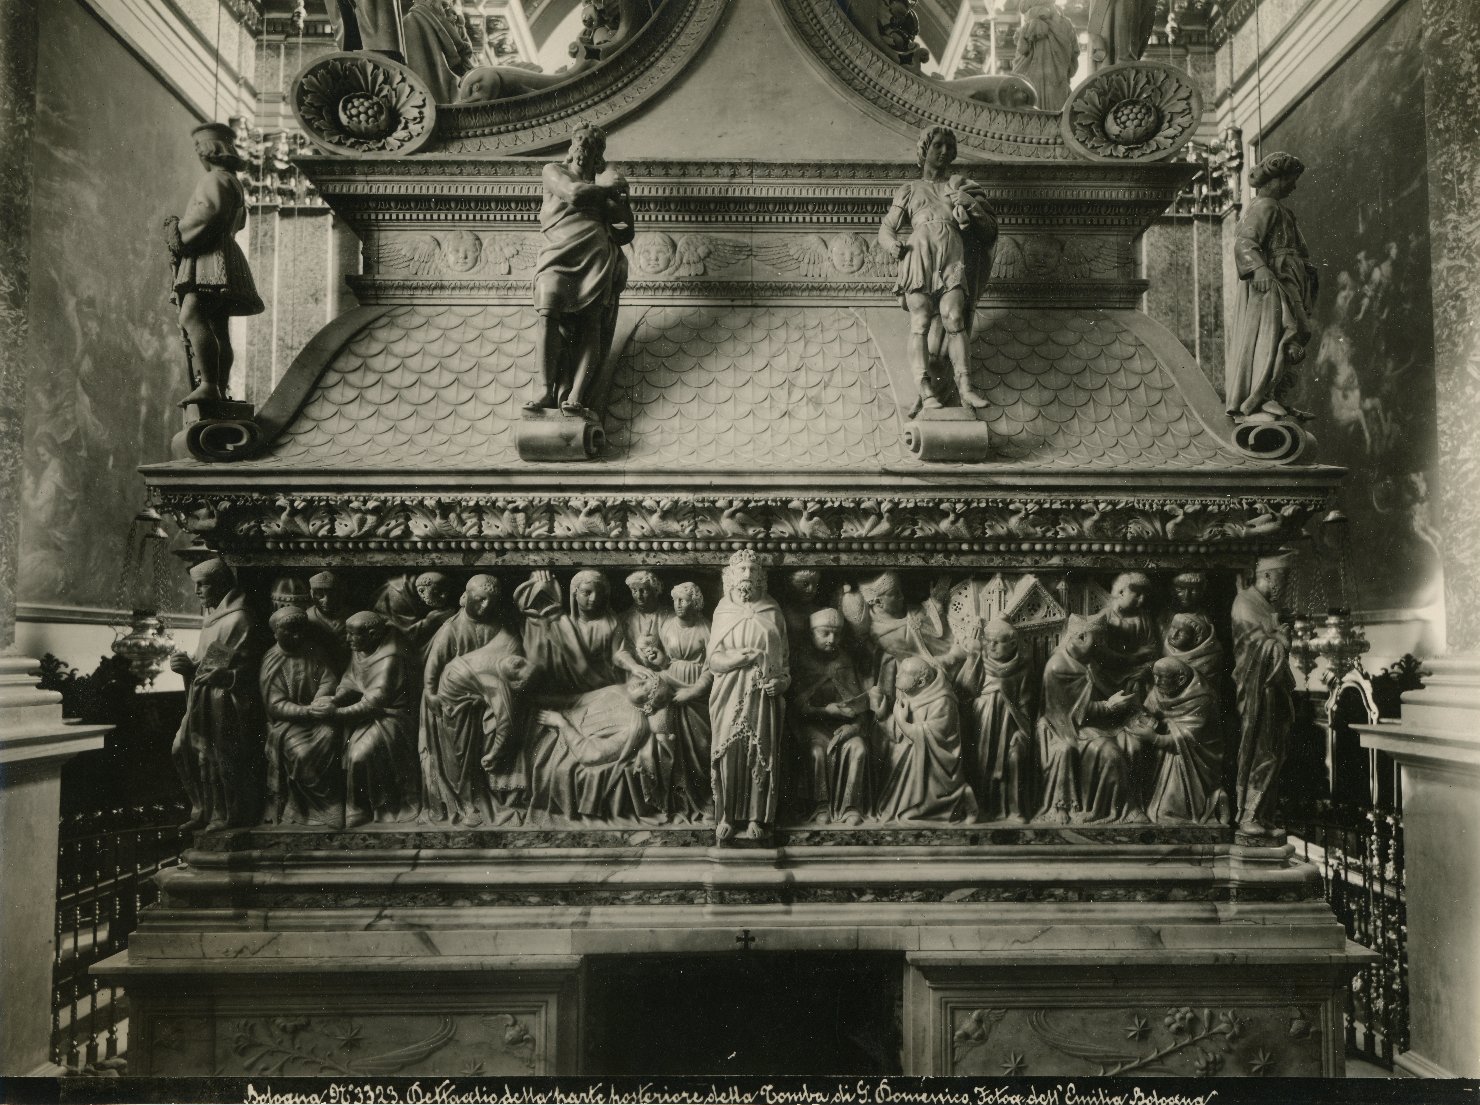 Scultura - Arche sepolcrali - Rilievi - Statue - Domenico di Guzmán (positivo) di Fotografia dell'Emilia (ditta) (XX)